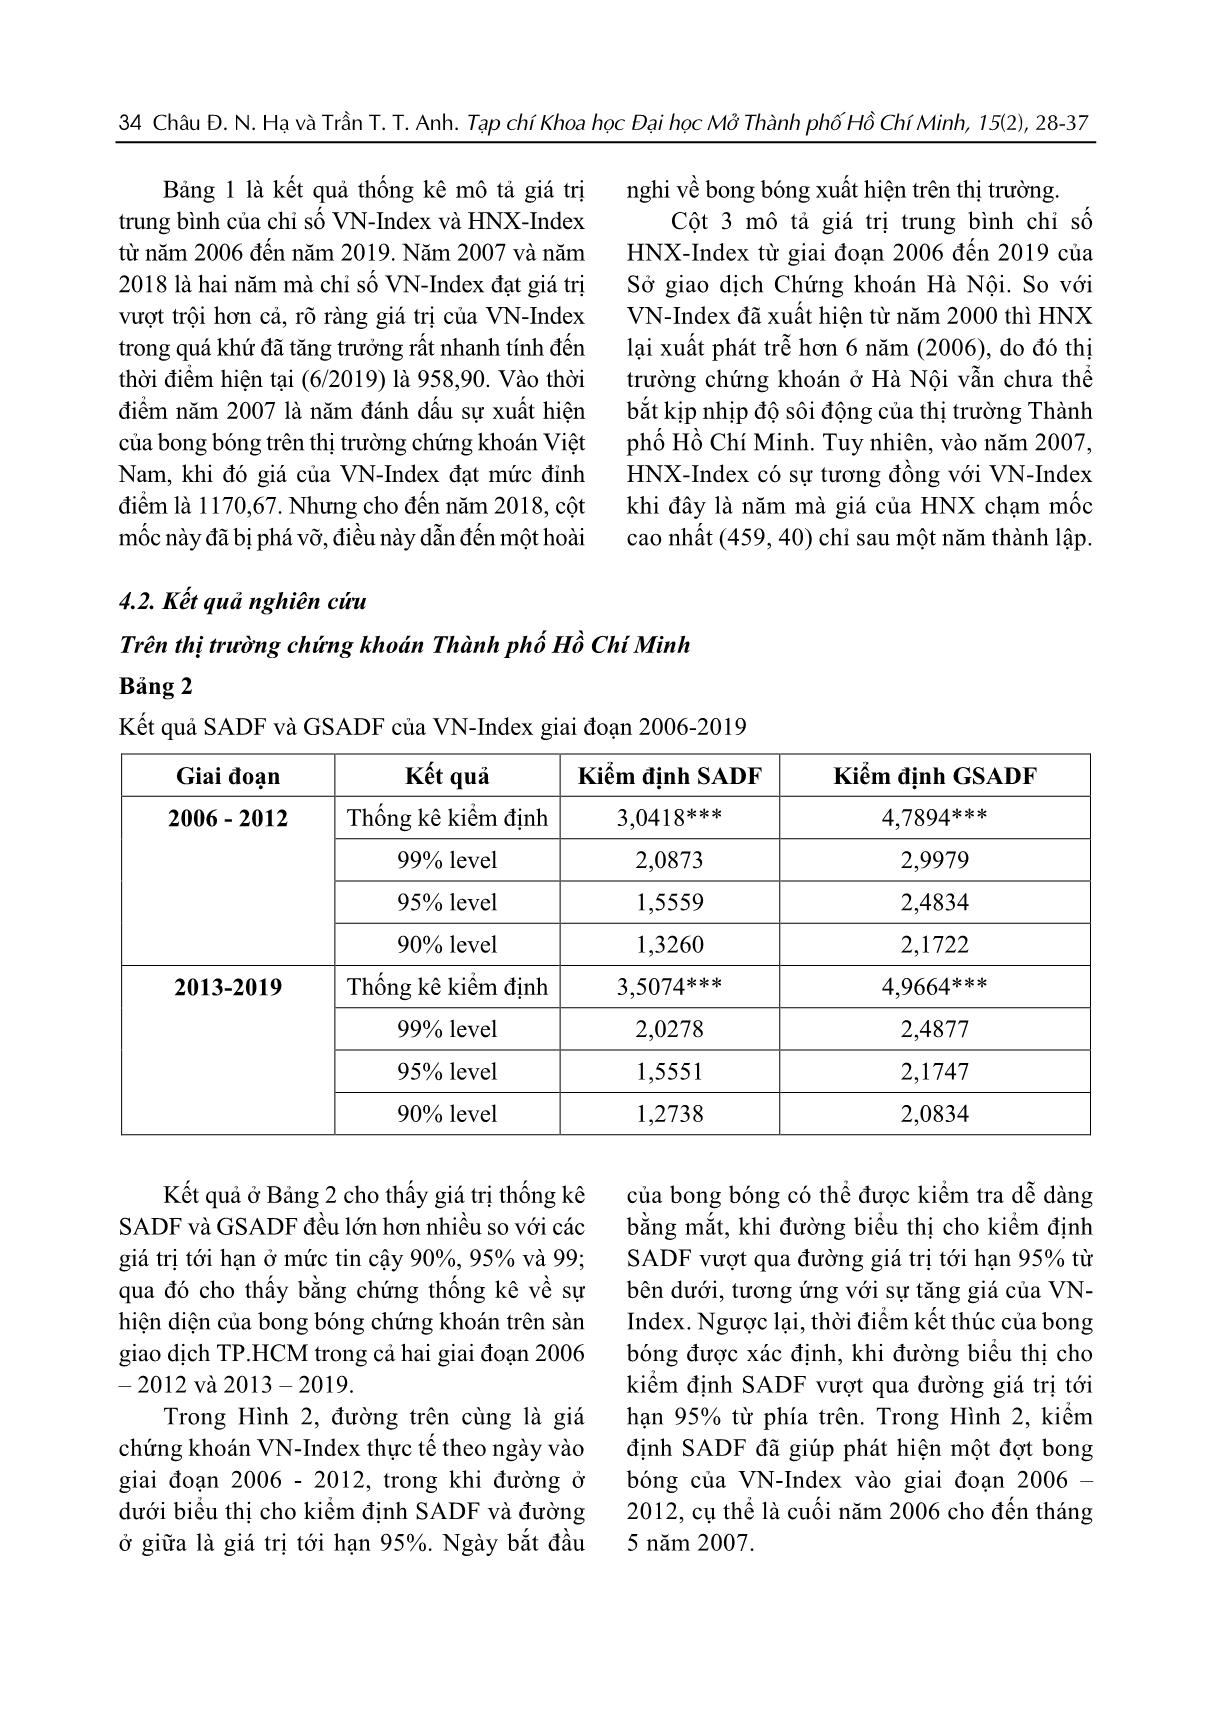 Kiểm định sự hiện diện của bong bóng trên thị trường chứng khoán Việt Nam giai đoạn từ 2006 đến 2019 trang 7